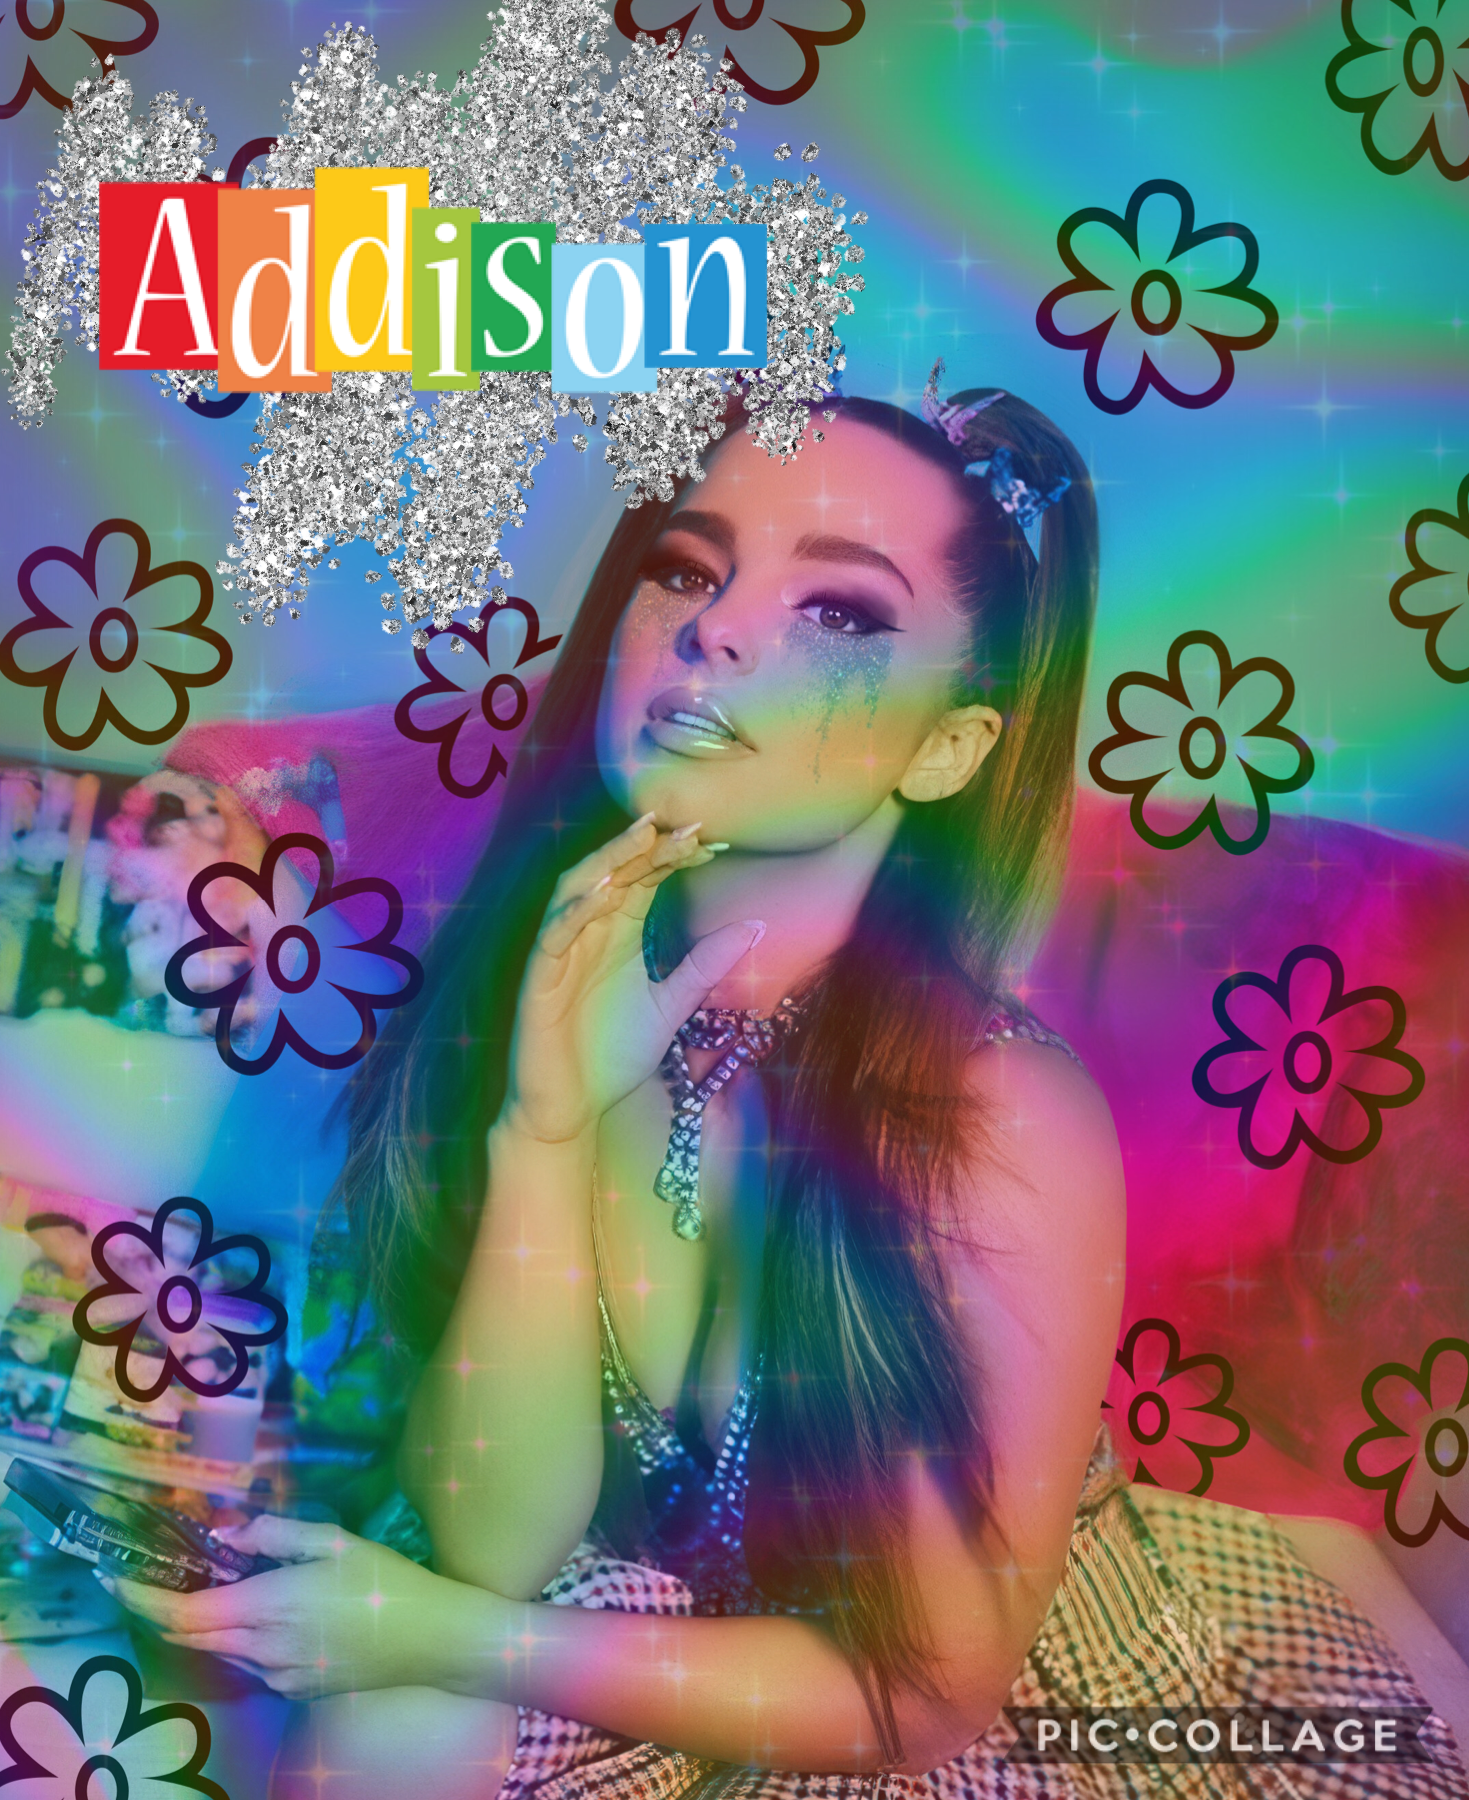 TAP

Not a fan of Addison but I’m a fan of this y2k edit 😍